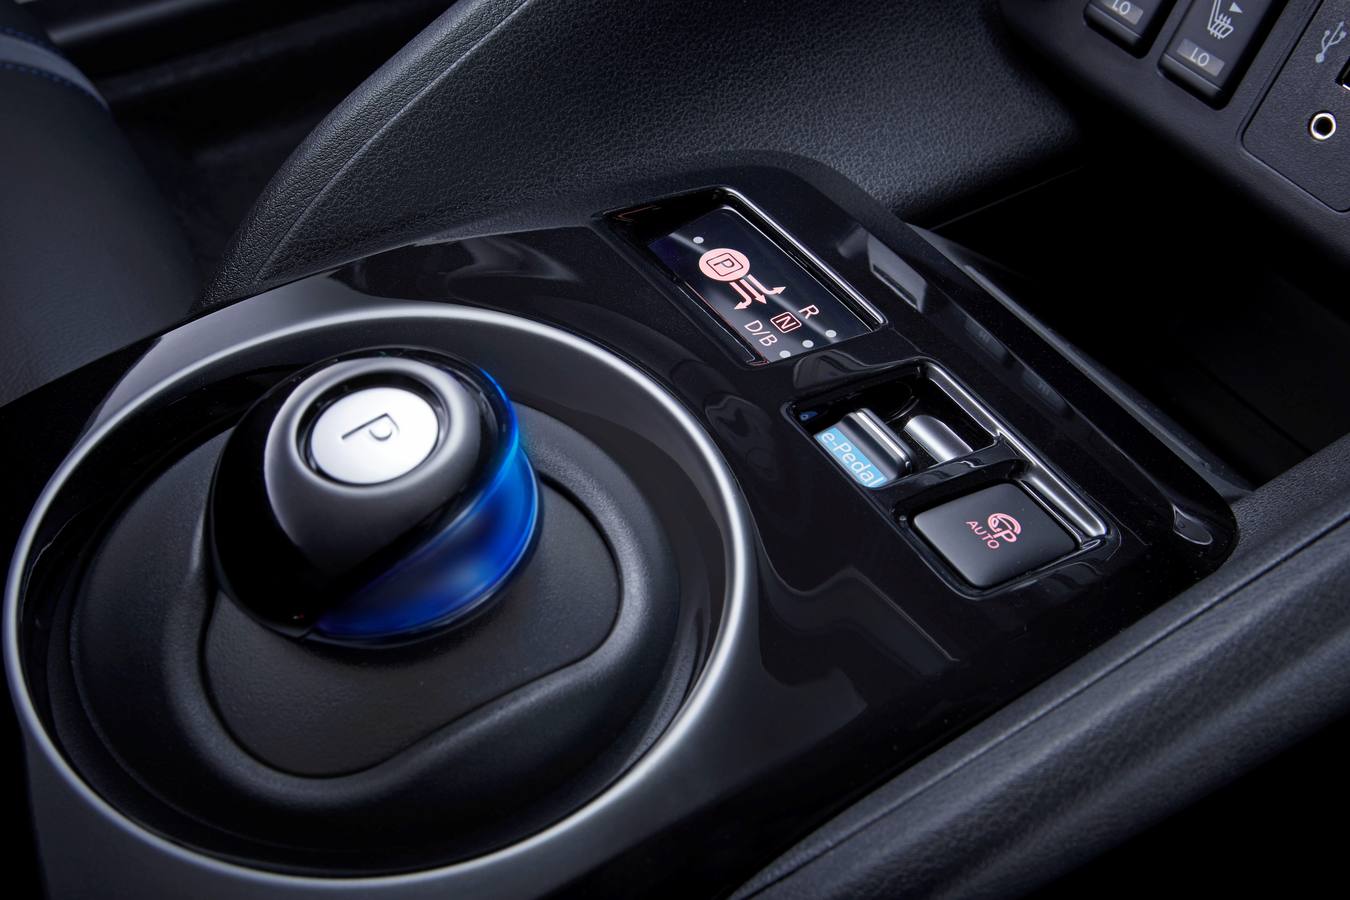 Renovación completa del Nissan Leaf con más potencia, mayor autonomía y mejores tecnologías de seguridad y conectividad. Las primeras unidades llegan a primeros de año.